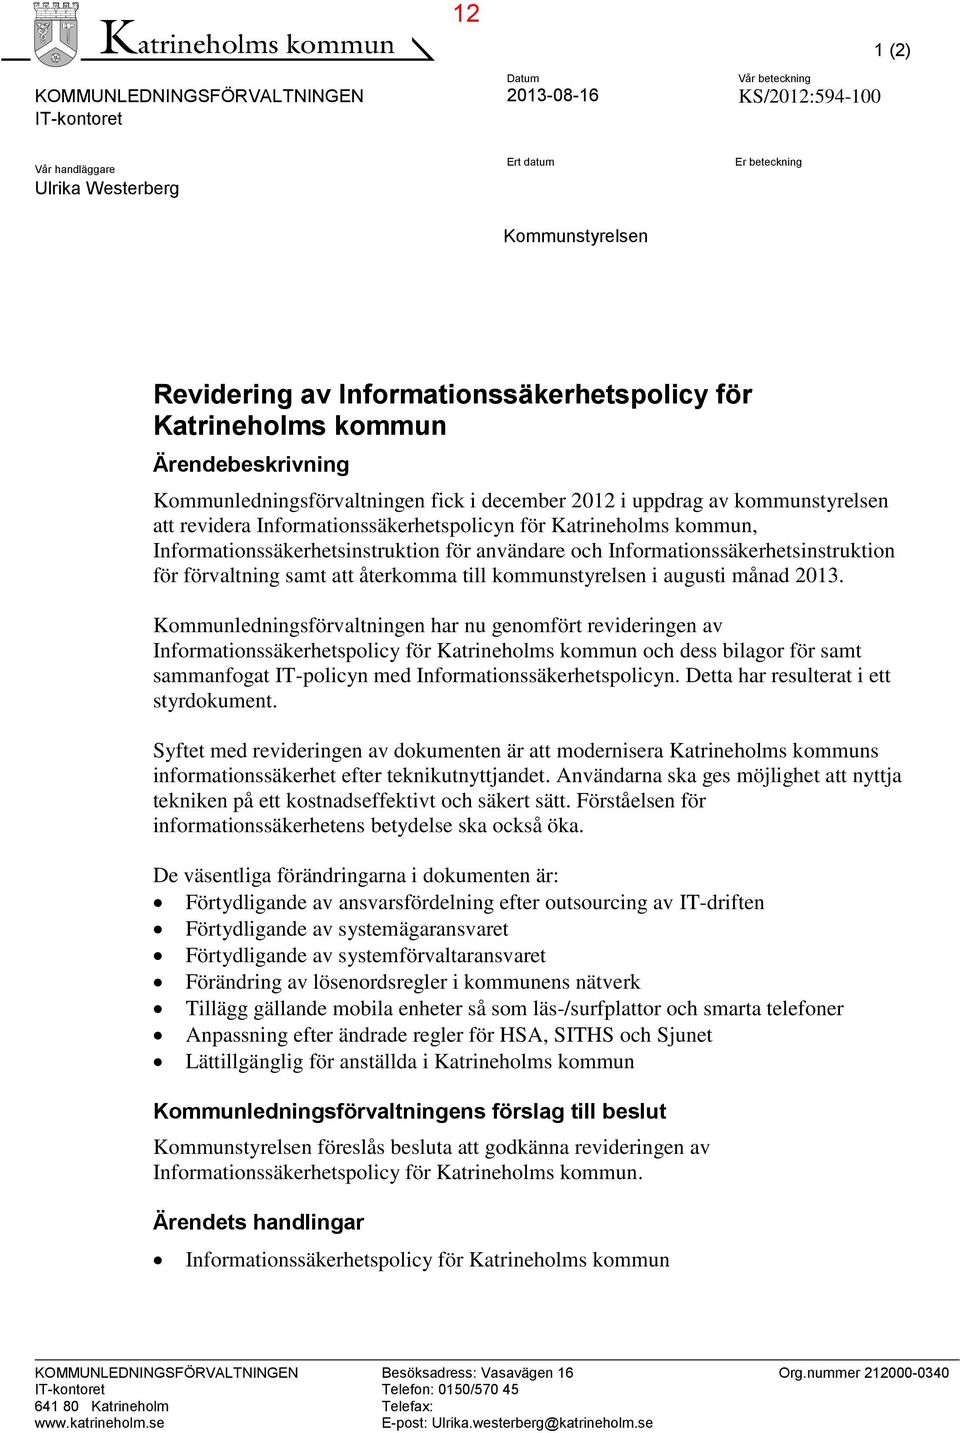 Katrineholms kommun, Informationssäkerhetsinstruktion för användare och Informationssäkerhetsinstruktion för förvaltning samt att återkomma till kommunstyrelsen i augusti månad 2013.